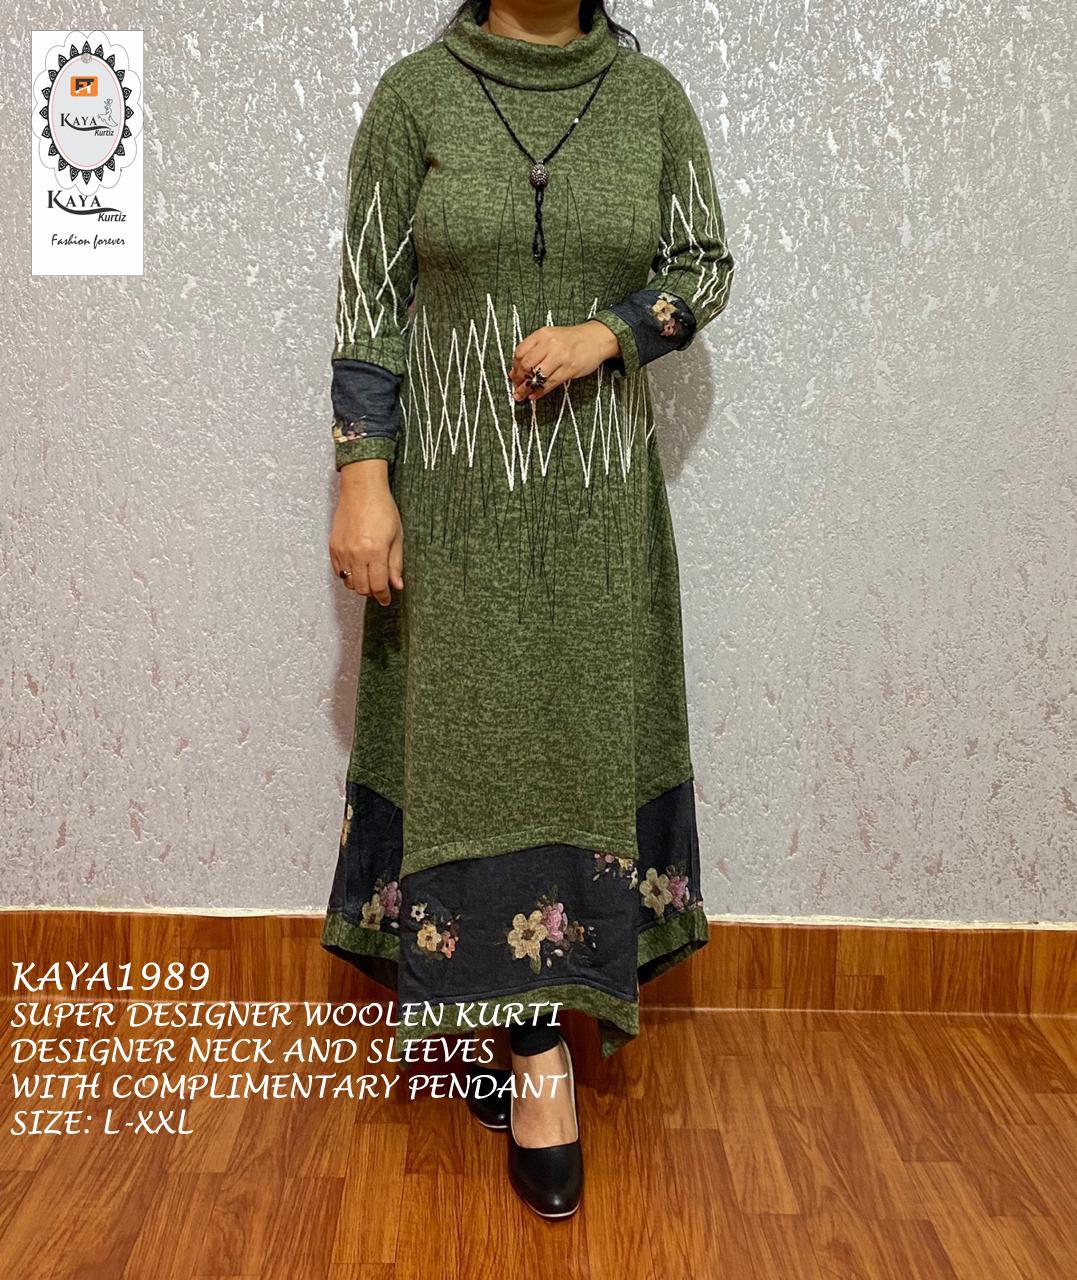 Detailed Information About Woolen Kurti Fashion Online